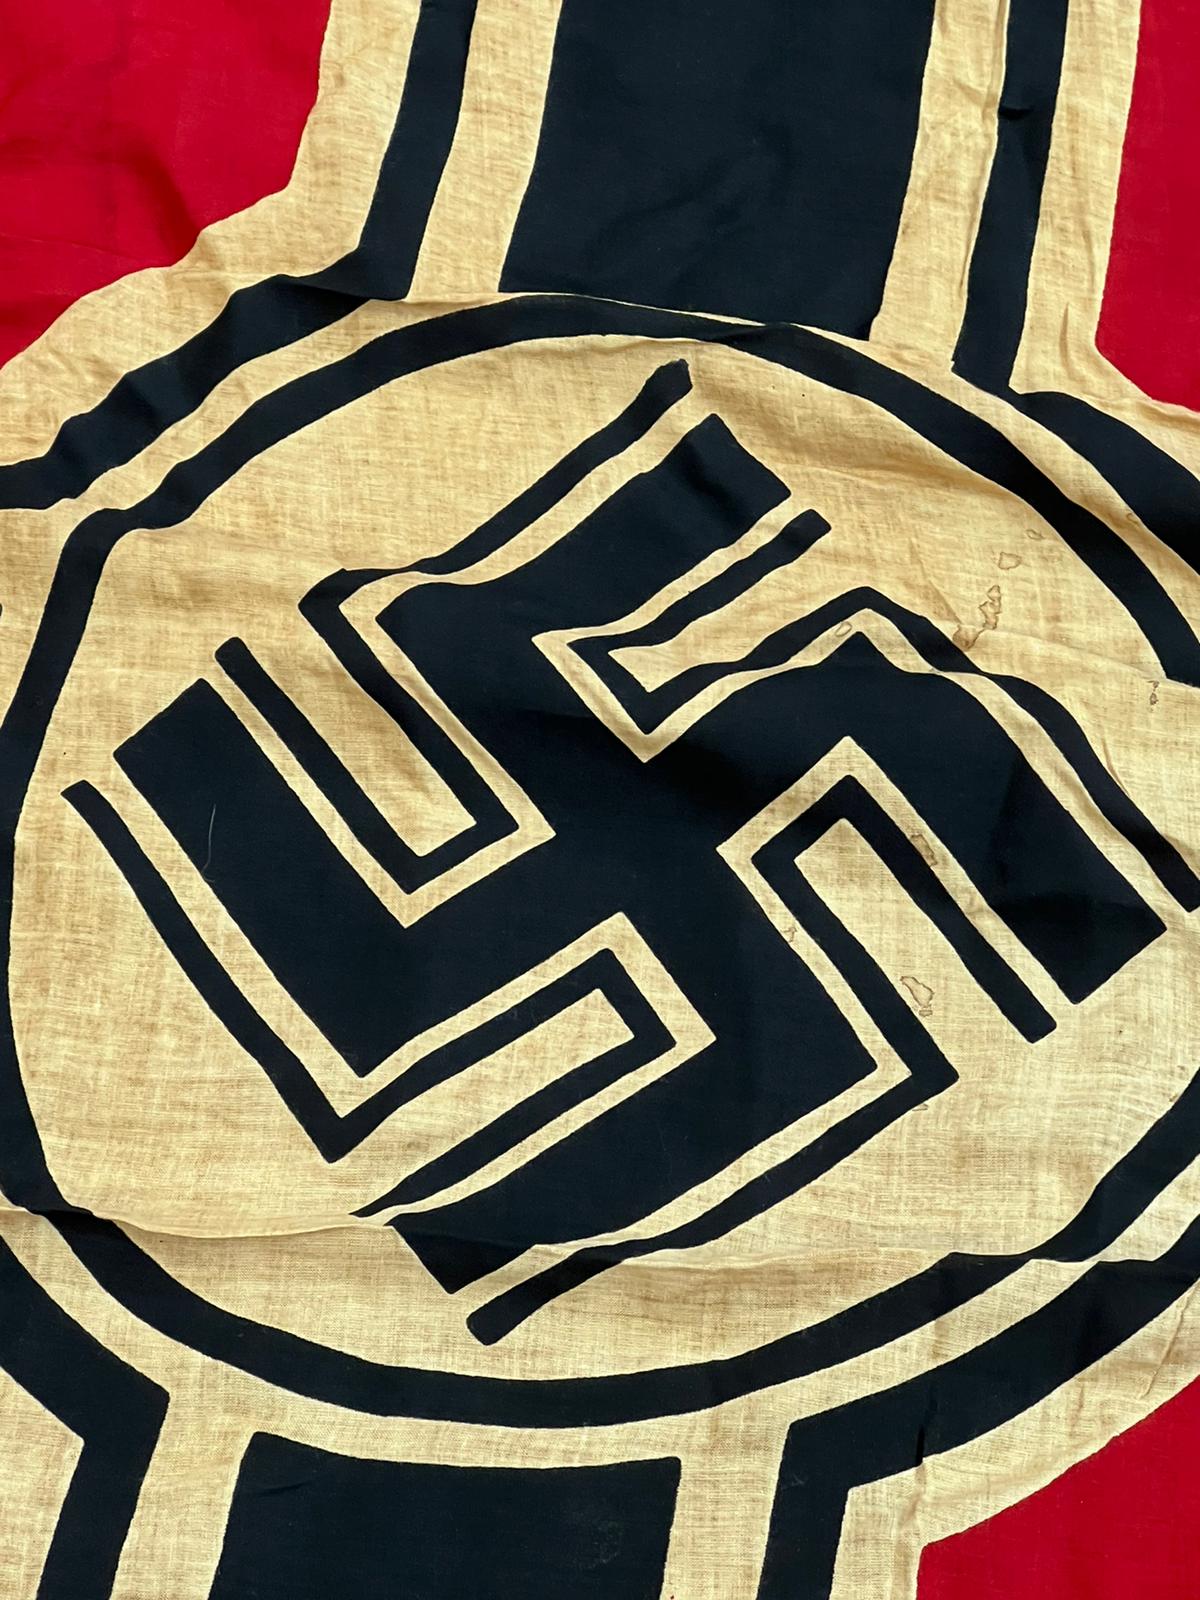 WWII SECOND WORLD WAR - THIRD REICH KRIEGSMARINE FLAG - Image 3 of 9